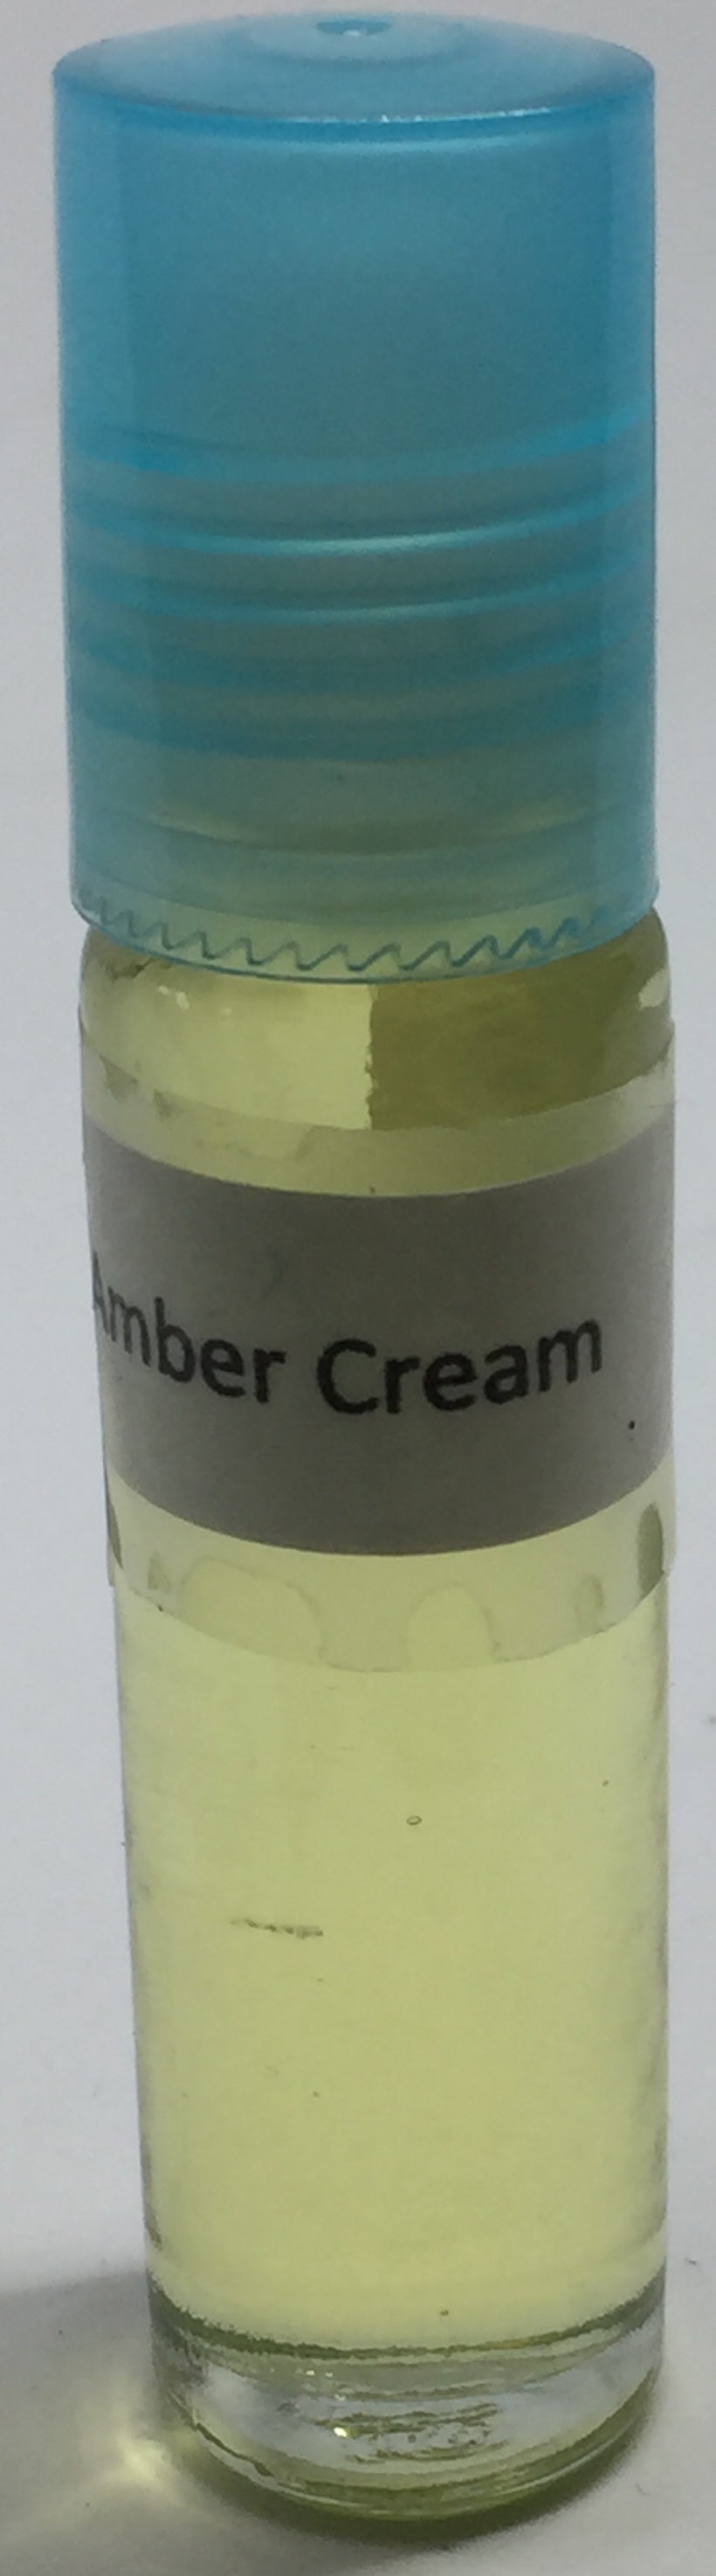 Amber Cream: Fragrance(Perfume)Body Oil Unisex